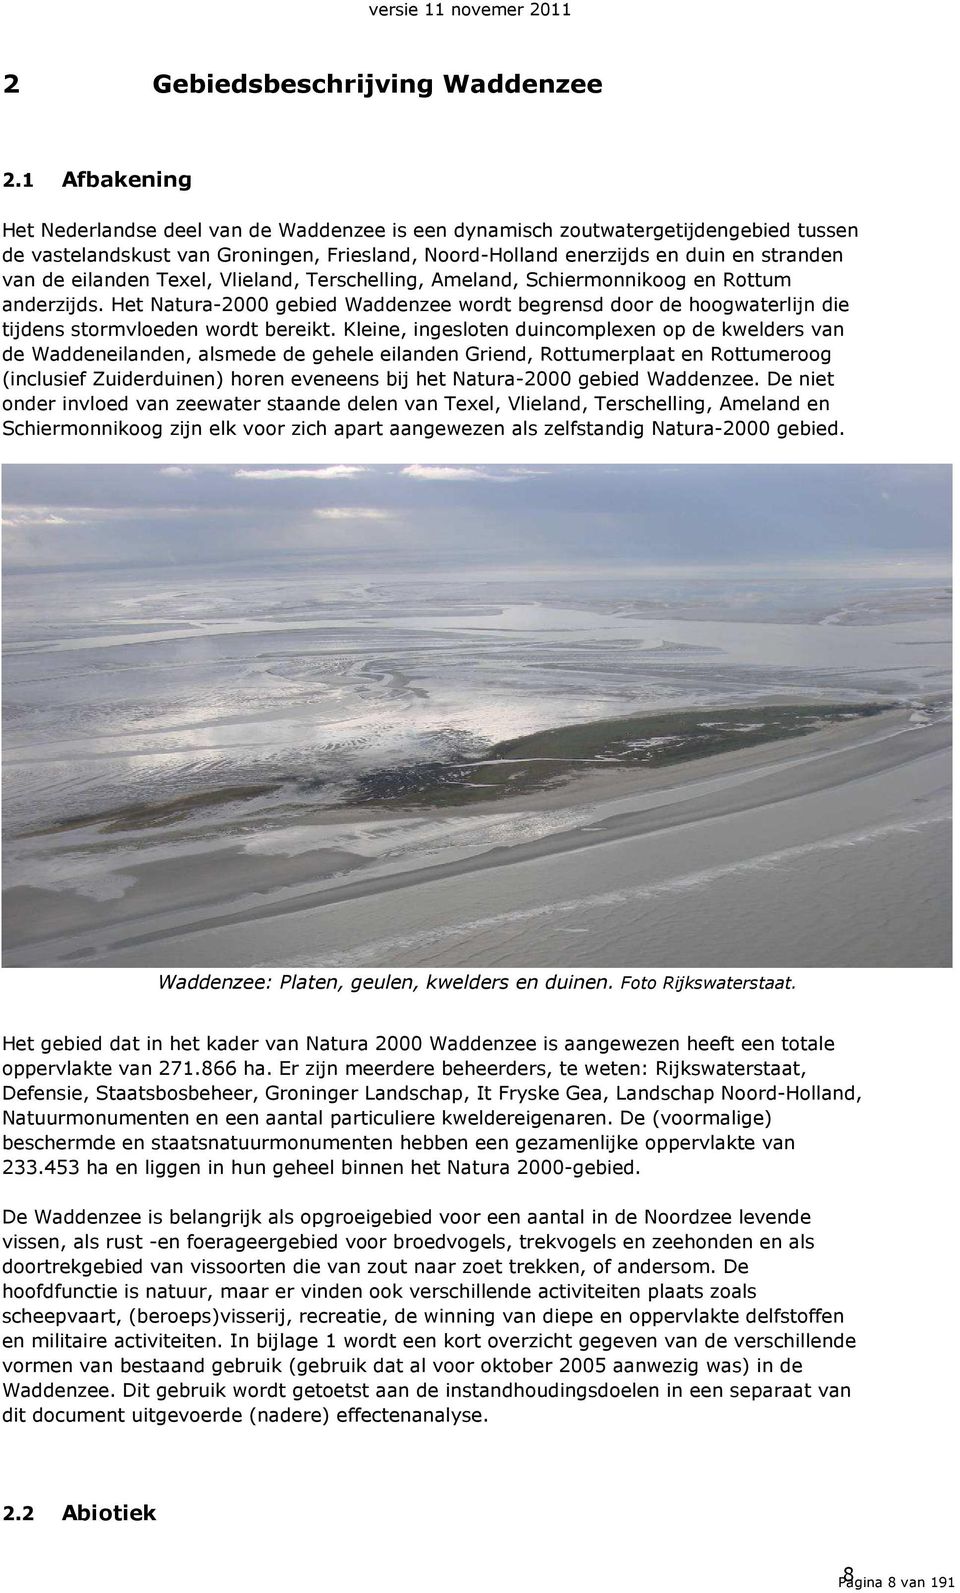 eilanden Texel, Vlieland, Terschelling, Ameland, Schiermonnikoog en Rottum anderzijds. Het Natura-2000 gebied Waddenzee wordt begrensd door de hoogwaterlijn die tijdens stormvloeden wordt bereikt.